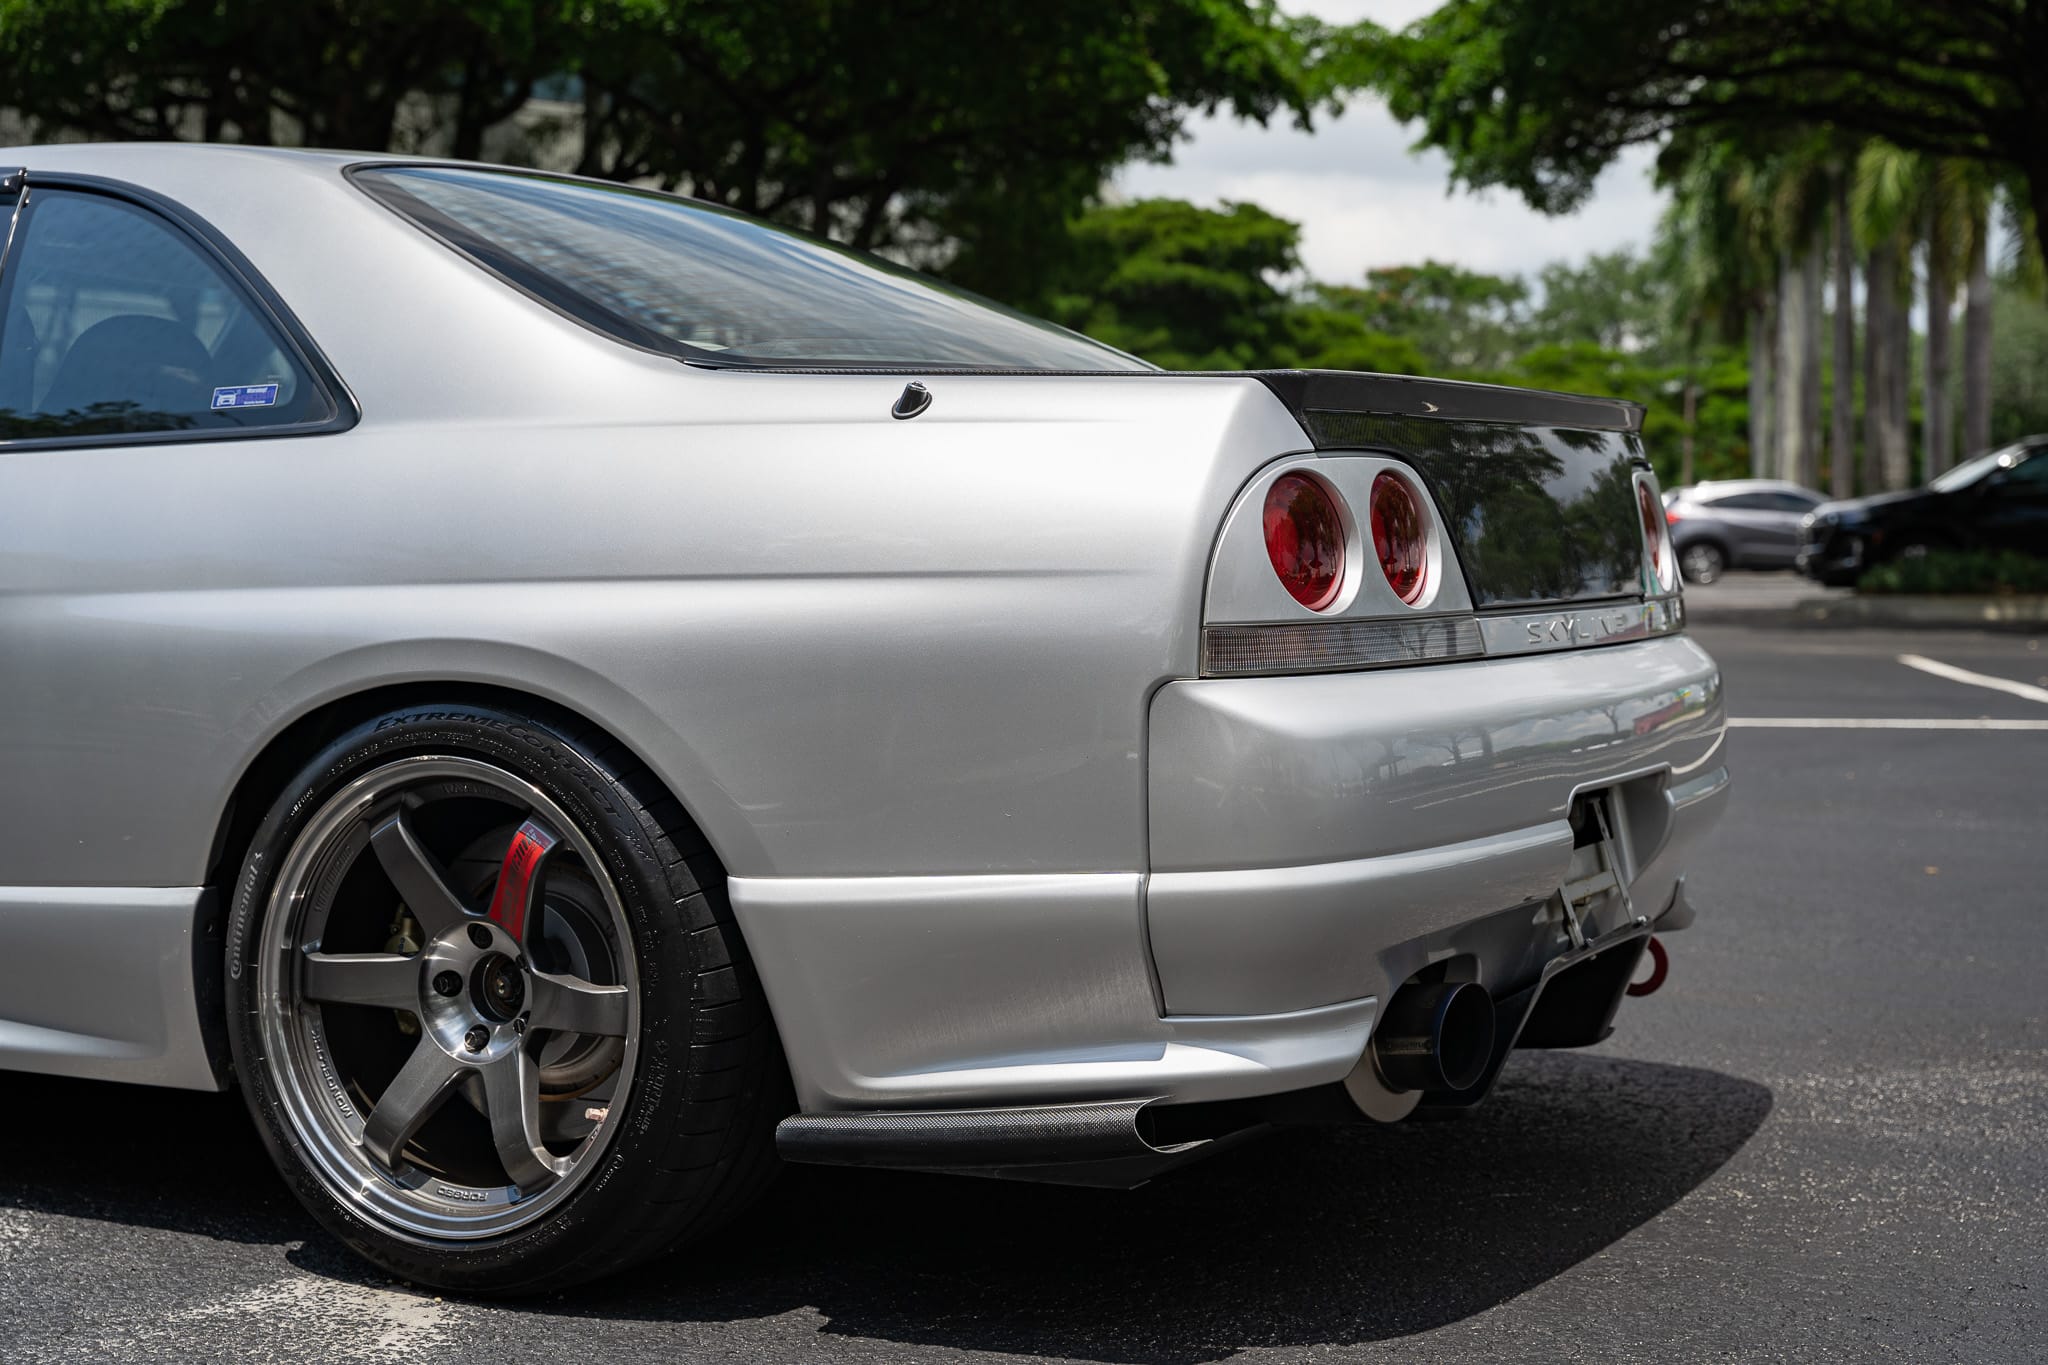 1995 Nissan Skyline GT-R (BCNR33) by ROOT Japan | HKS Parts Galore | Ganador Catback | TE37SL | Kansai Service | Carshop F1 | Top Secret | Cusco Suspension Bits | Defi Gauges | Drives Beautifully | Super Clean